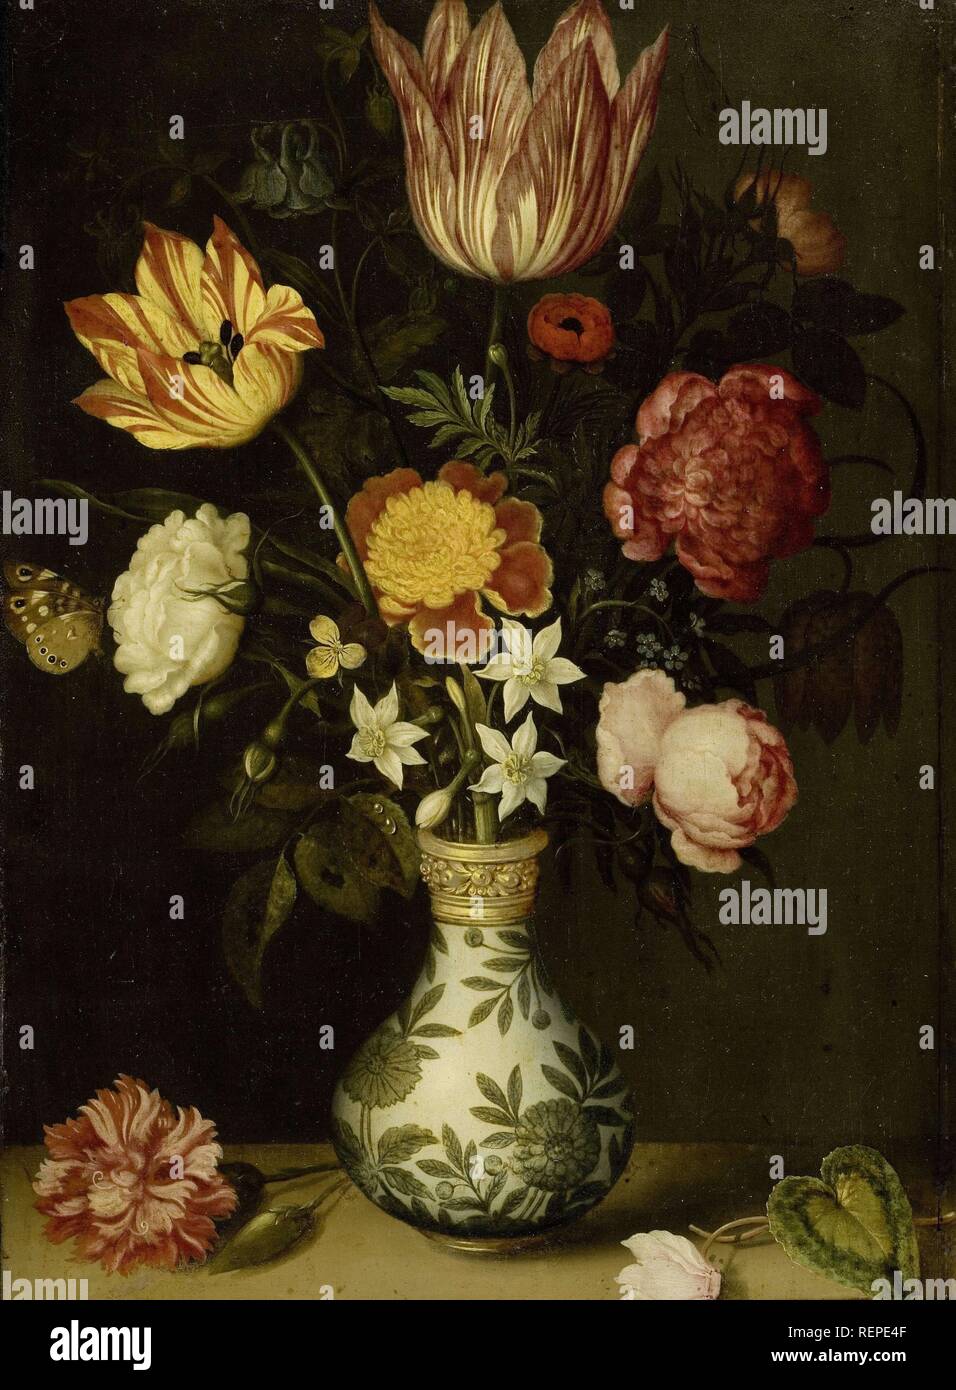 Stillleben mit Blumen in einem Wan-li Vase. Dating: 1619. Maße: Support: H 31 cm x W 22,5 cm. Museum: Rijksmuseum, Amsterdam. Thema: AMBROSIUS BOSSCHAERT. Stockfoto